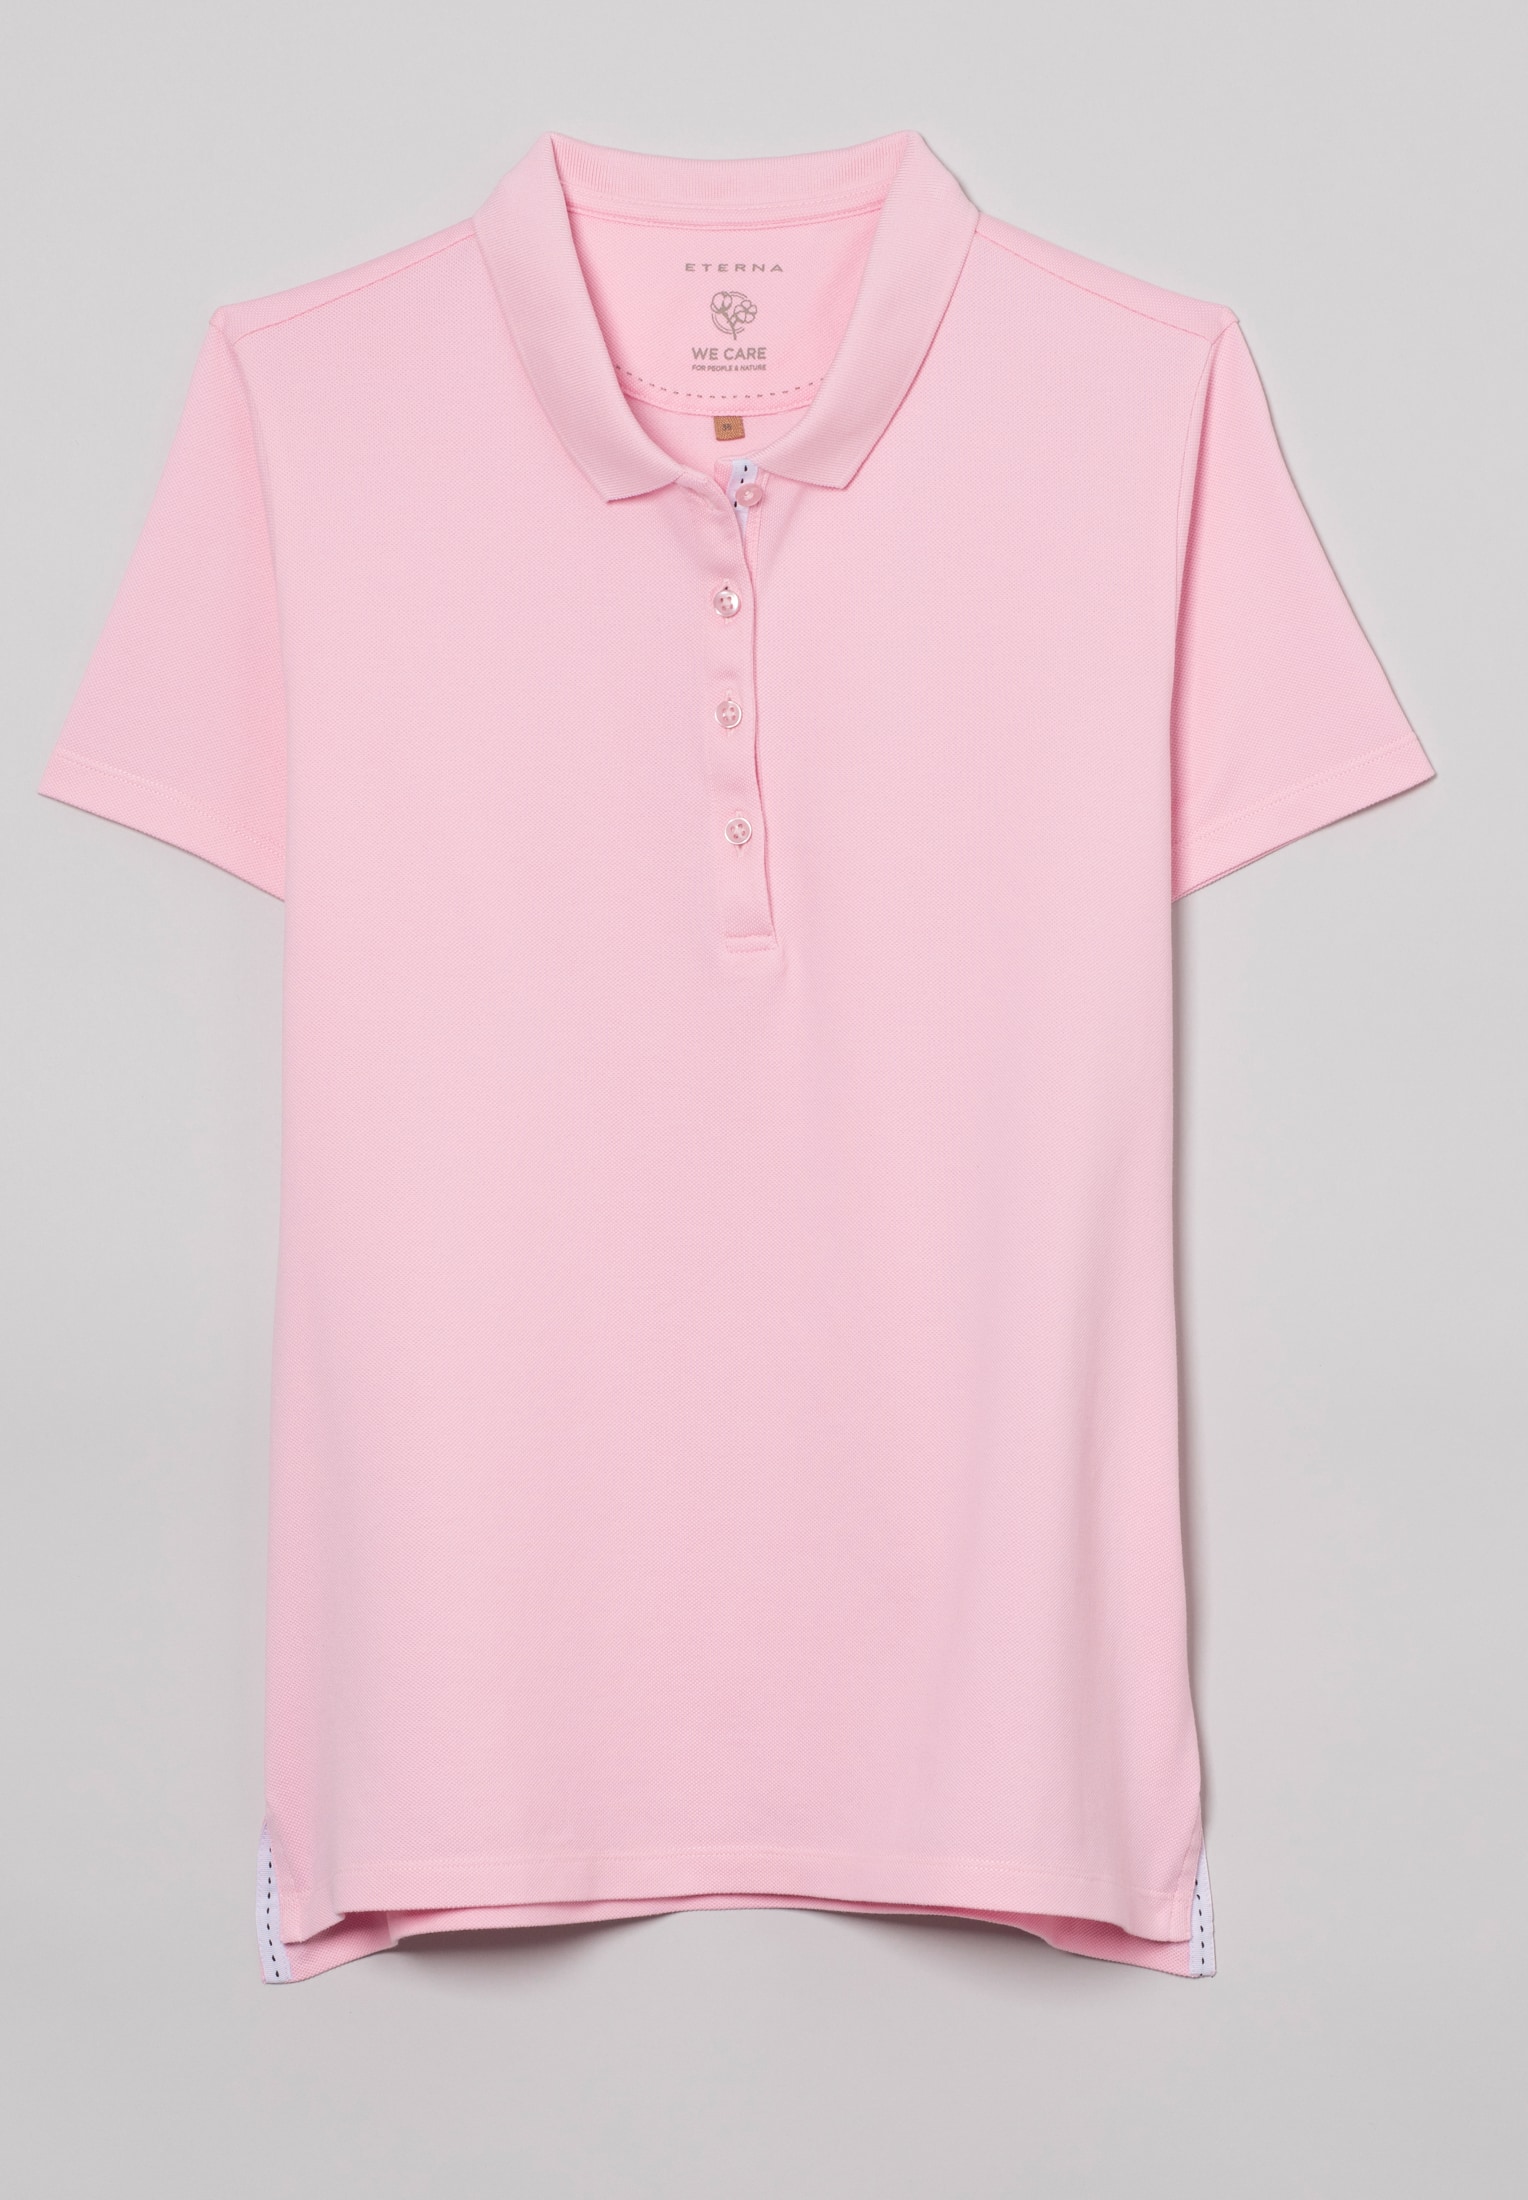 Poloshirt in soft pink Kurzarm | L pink | | unifarben 2SP00006-15-12-L-1/2 soft 